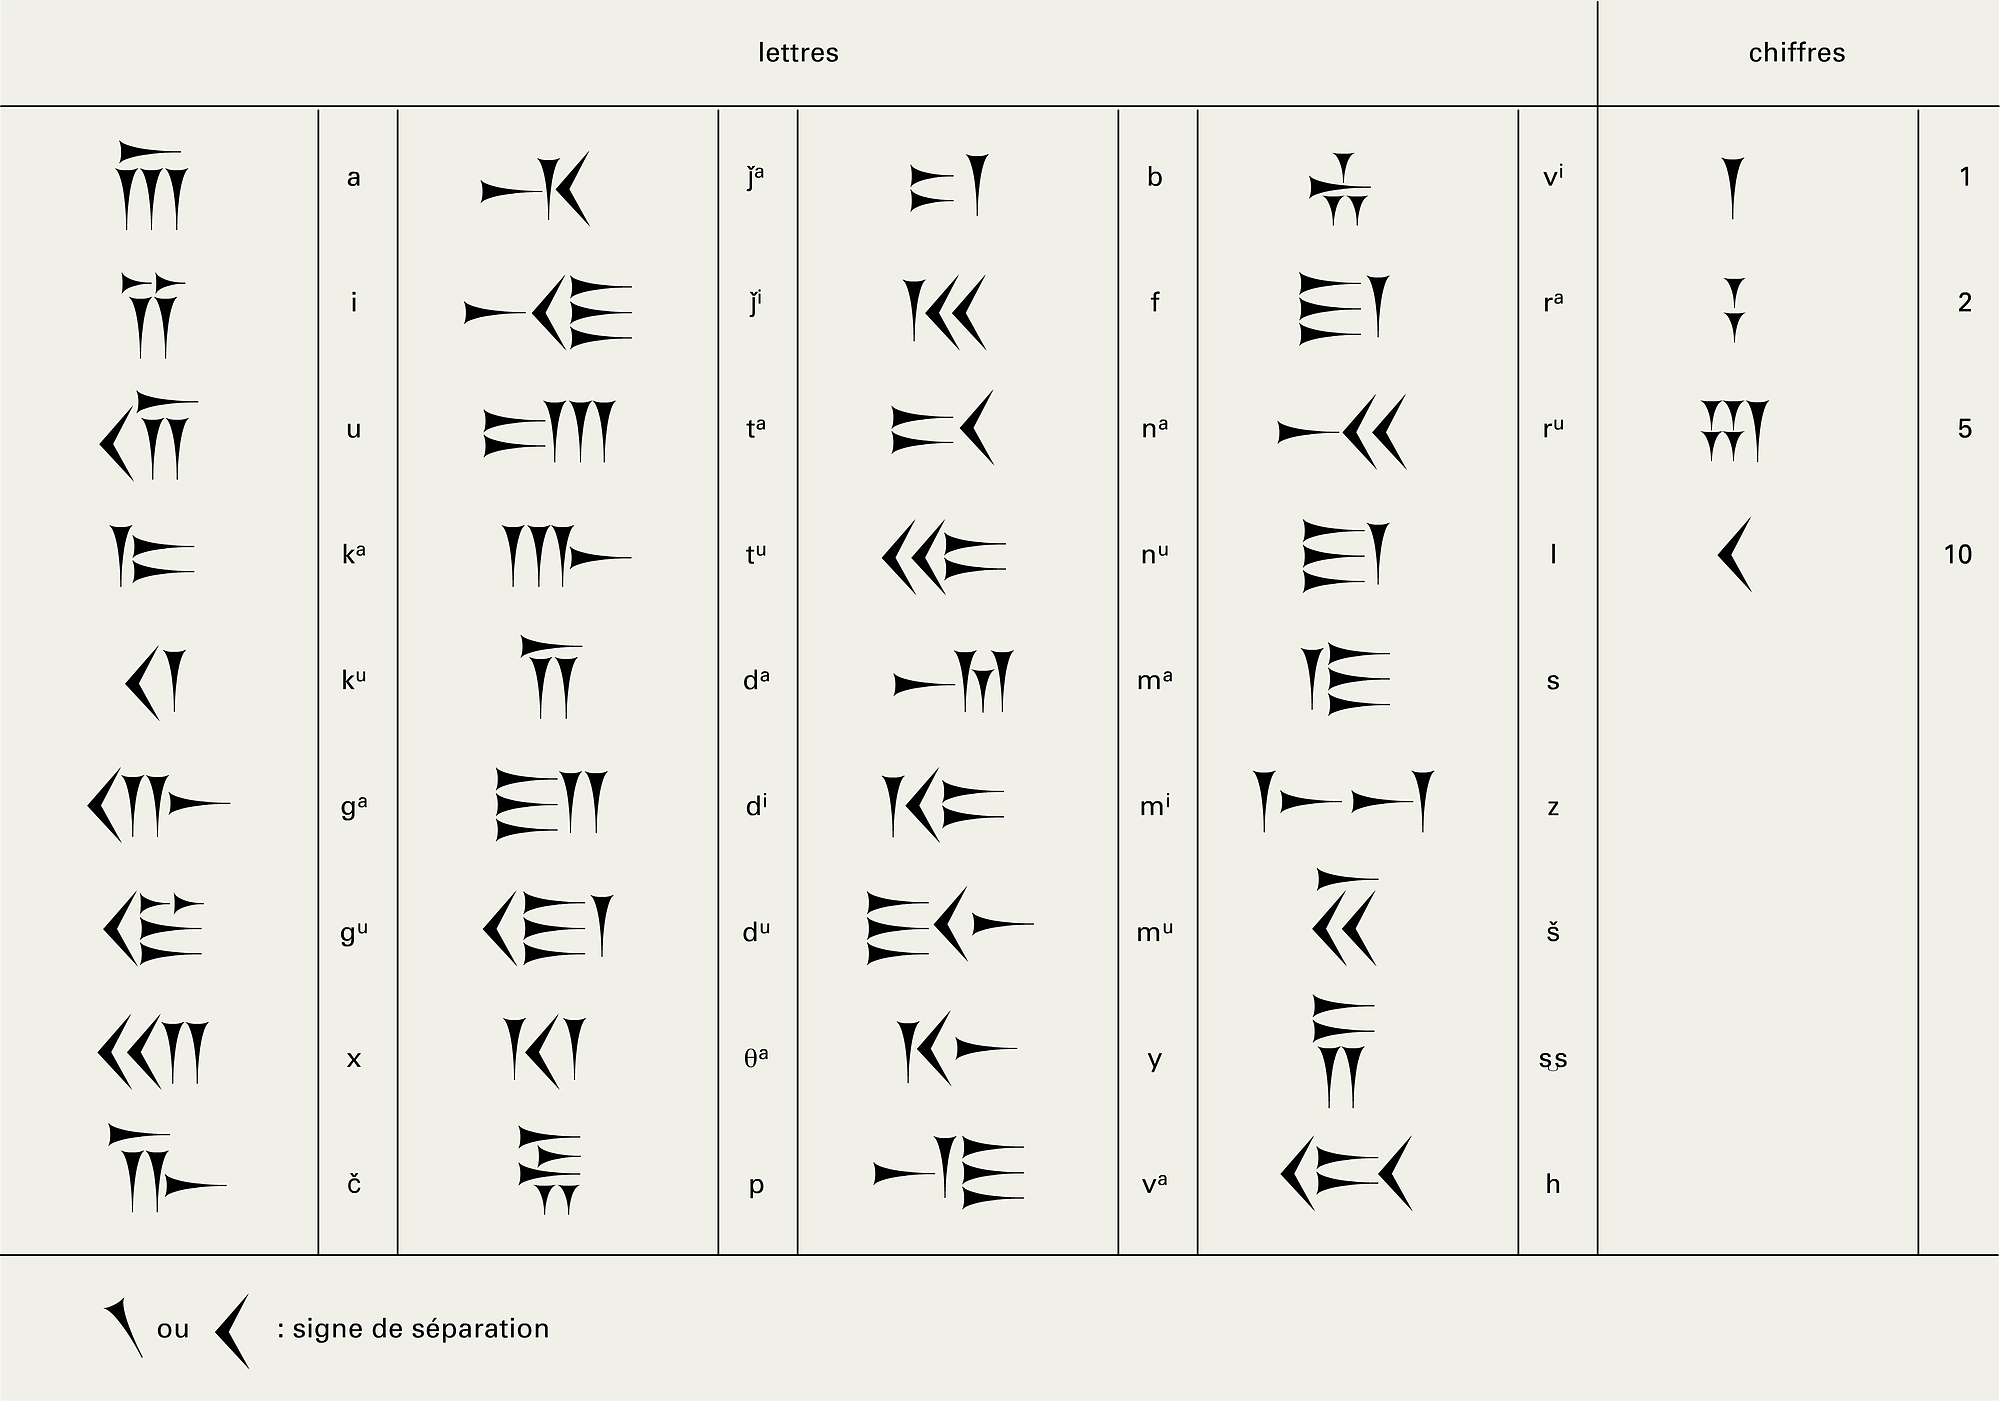 Perse : système graphique de l'écriture perse ancienne - crédits : Encyclopædia Universalis France